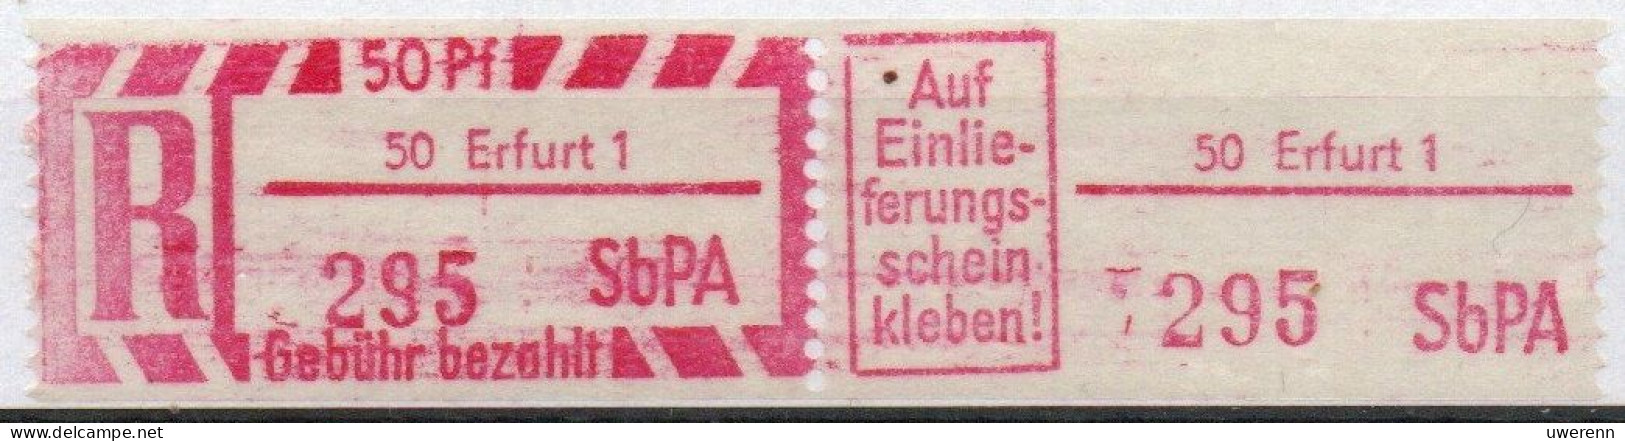 DDR Einschreibemarke Erfurt SbPA Postfrisch, EM2B-50-1II RU (a) Zh (Mi 2C) - R-Zettel